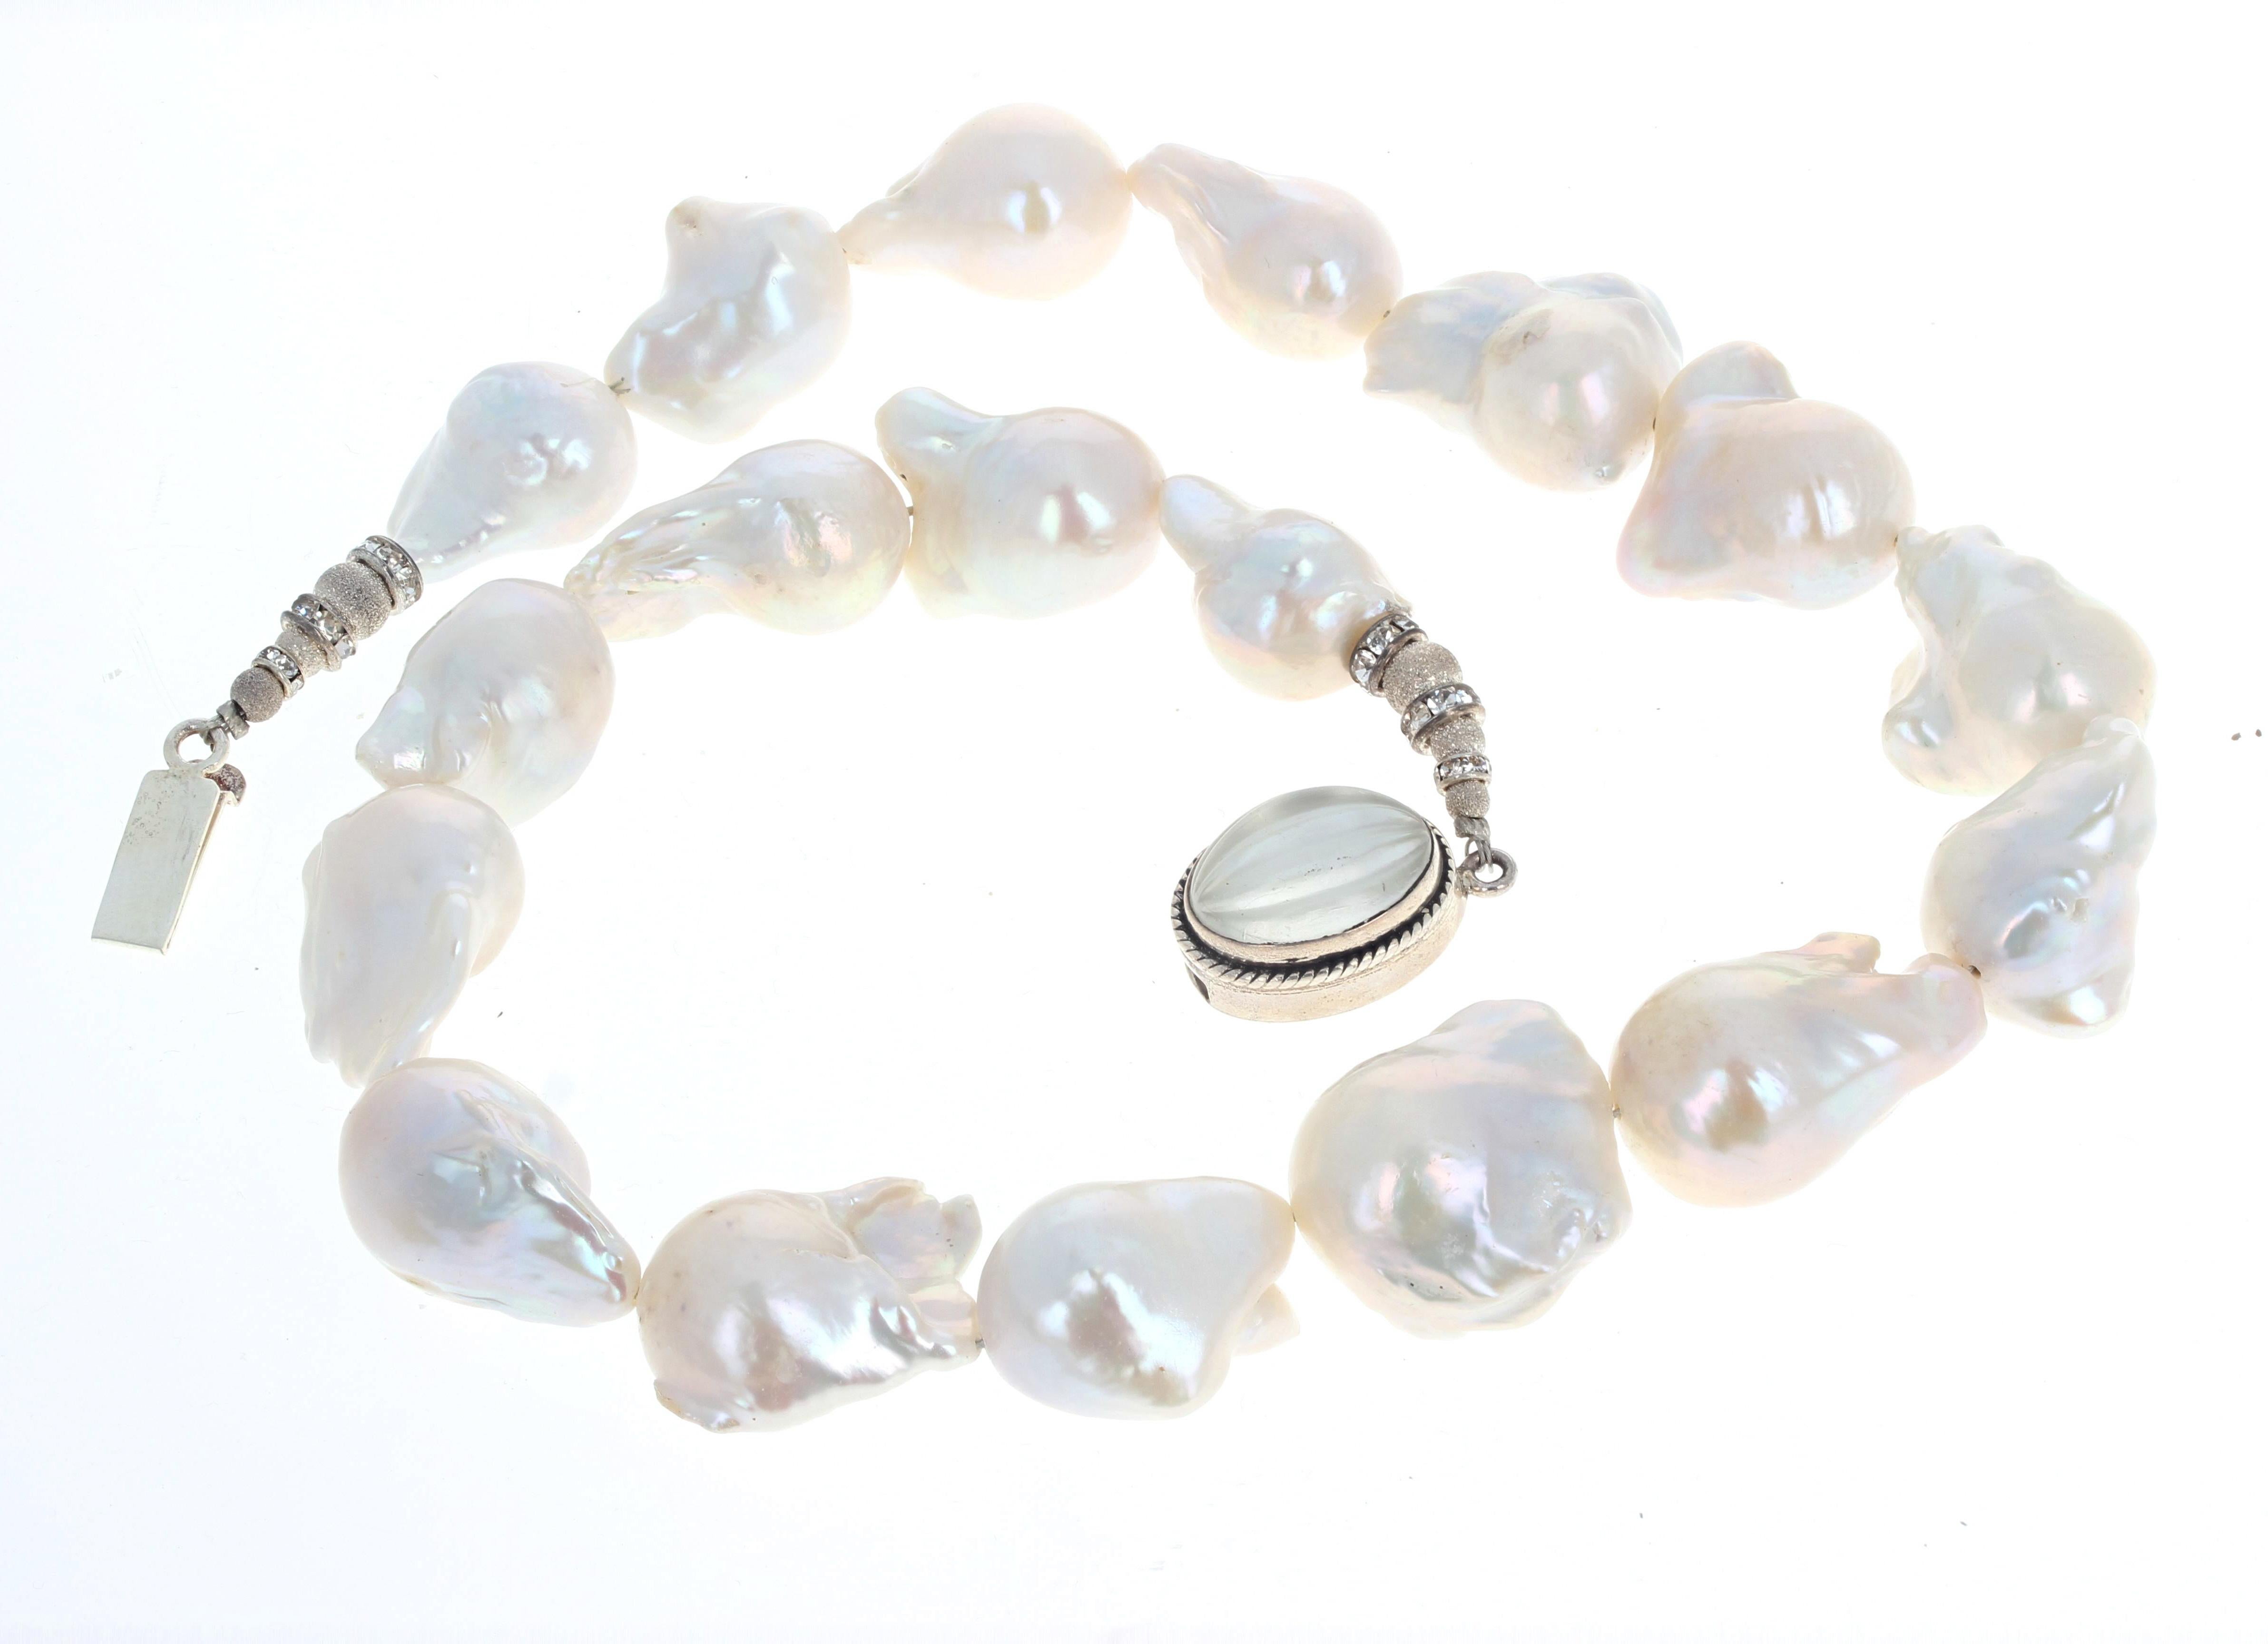 Des perles blanches naturelles HUGE Baroque sont serties dans ce magnifique collier de 20 pouces de long.  Les plus grosses perles mesurent environ 24 mm x 21 mm.  Le fermoir en argent est un fermoir à glissière facile à utiliser.  Il est absolument